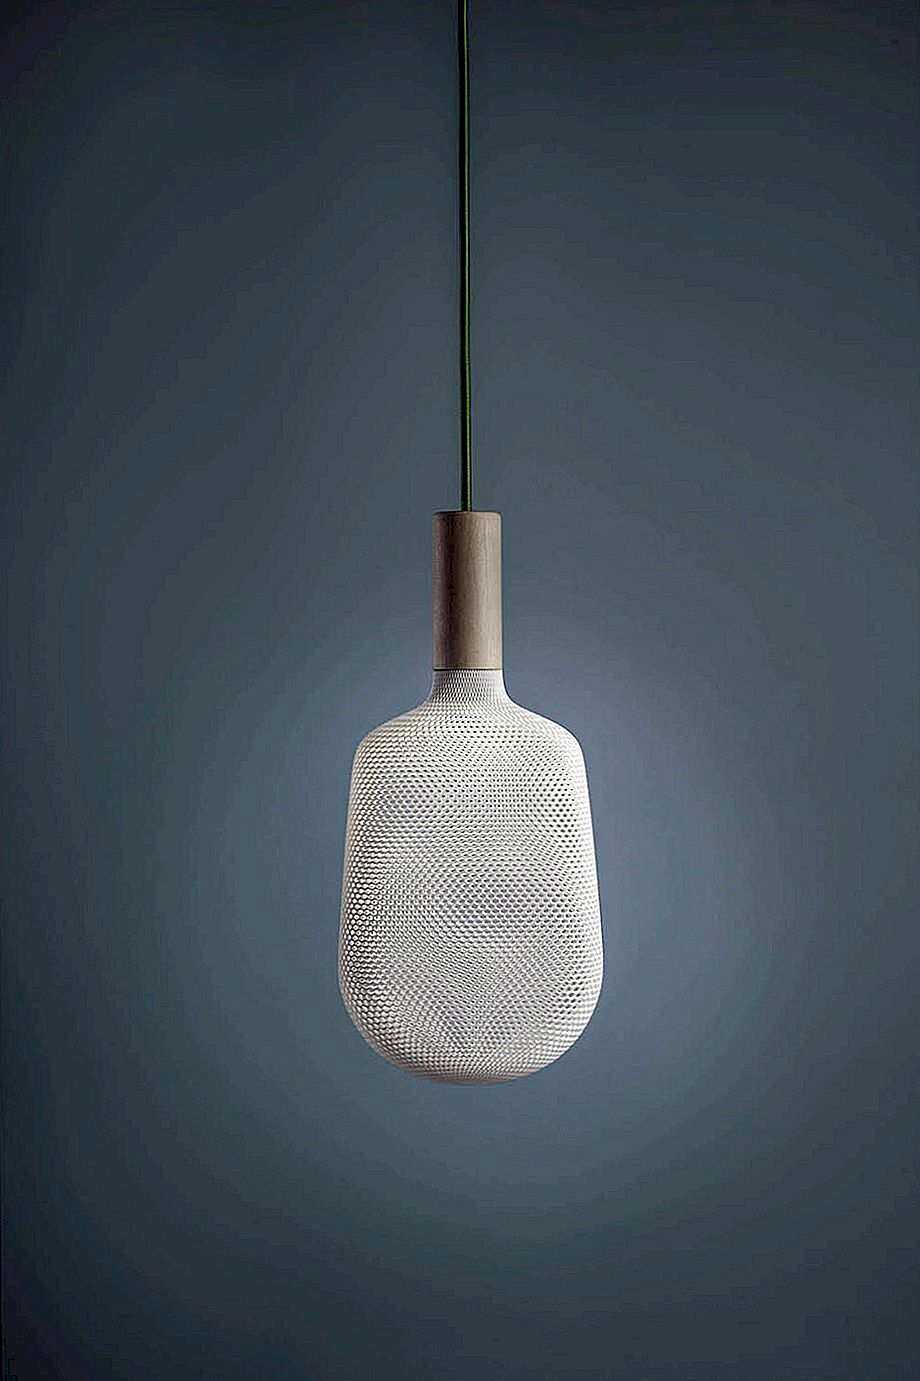 Afillia Lamp系列采用原创3D印花蕾丝状漫射器